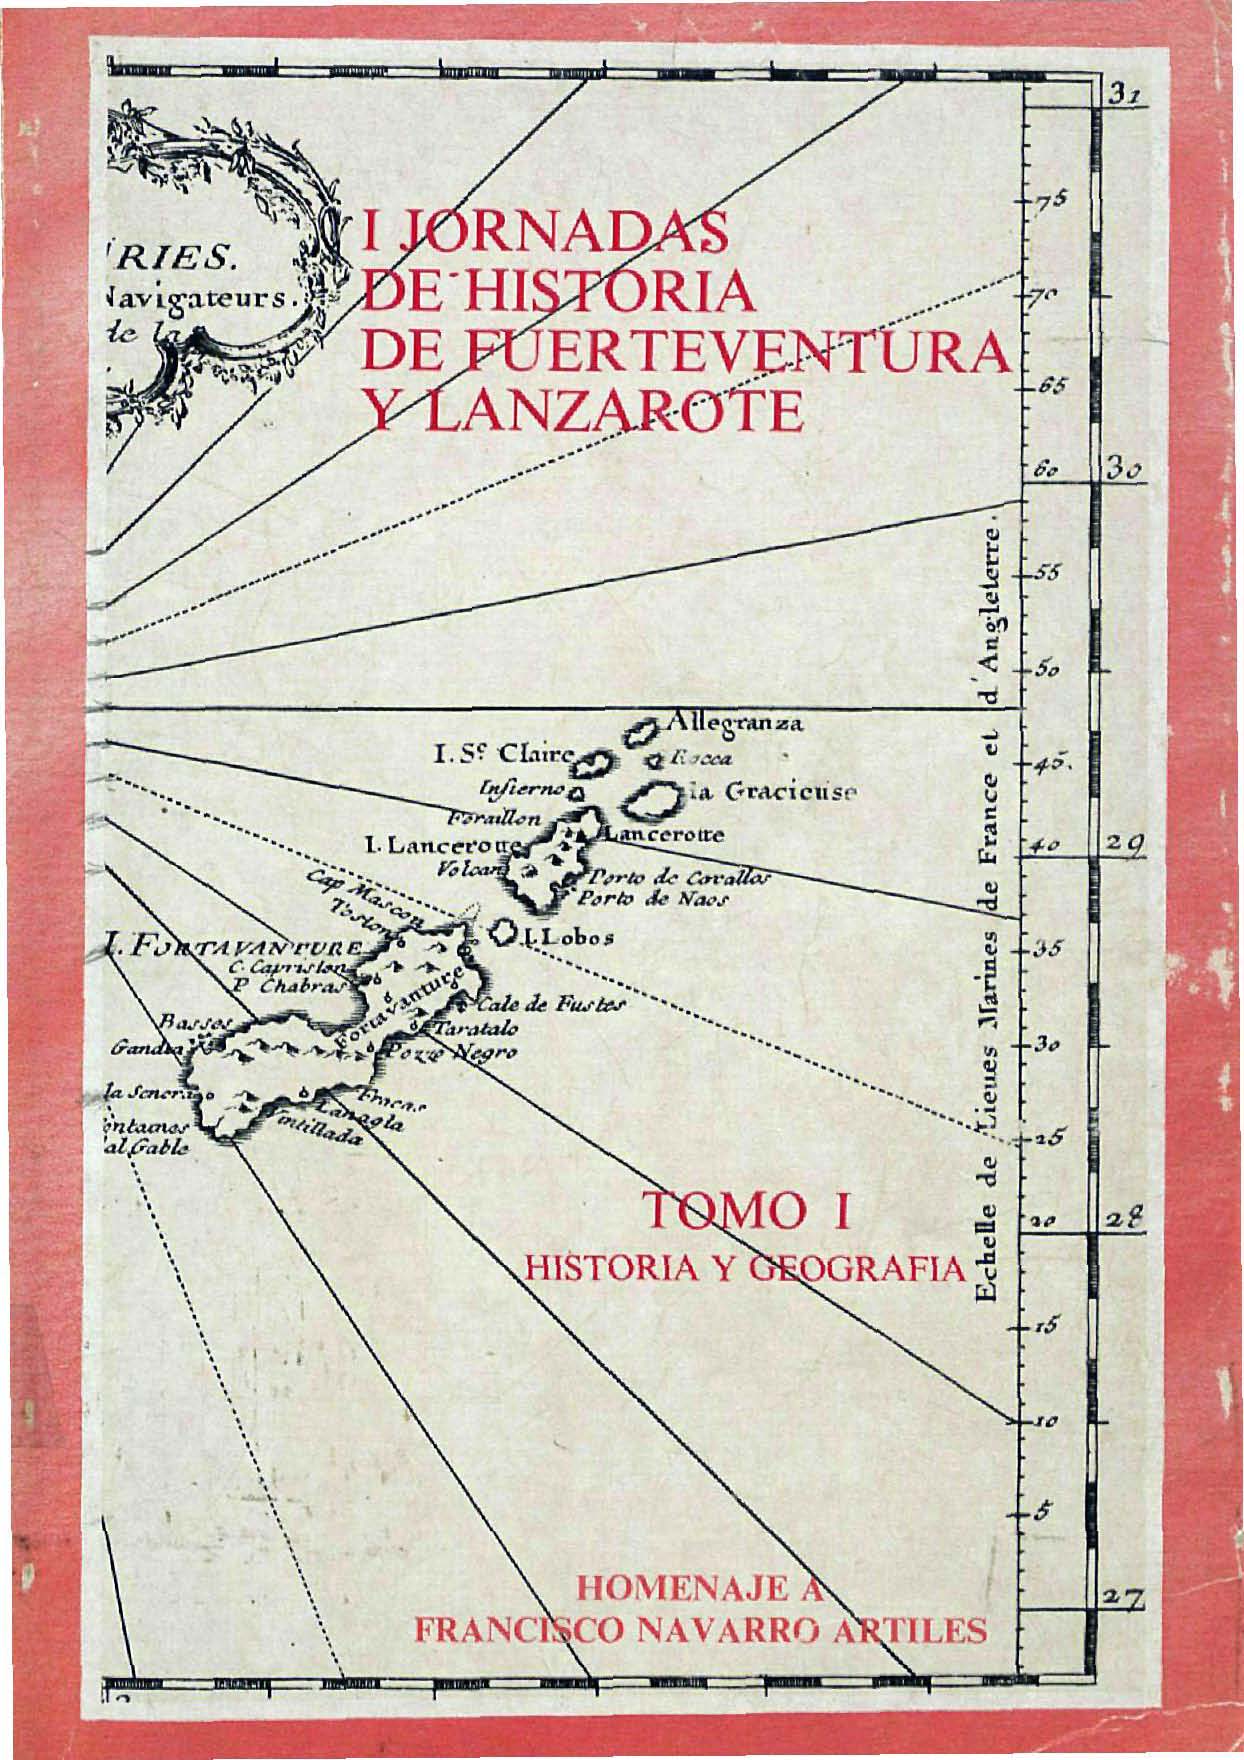 Una balandra canaria en la pesca sahariana (1926-1942)